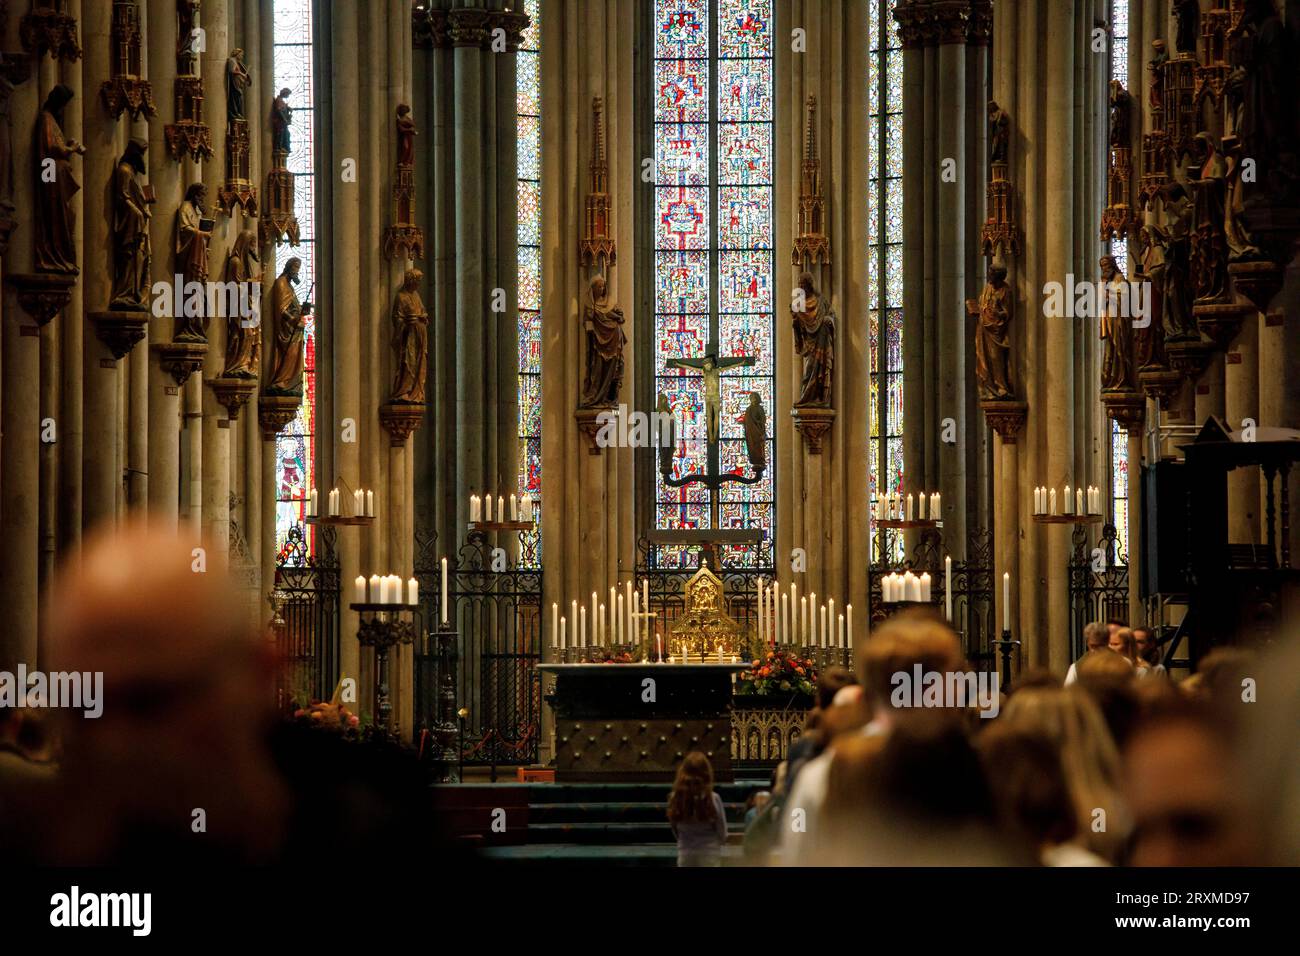 Nella cattedrale, vista attraverso la navata del coro, Colonia, Germania. im Dom, Blick durch das Hauptschiff zum Chor, Koeln, Deutschland. Foto Stock